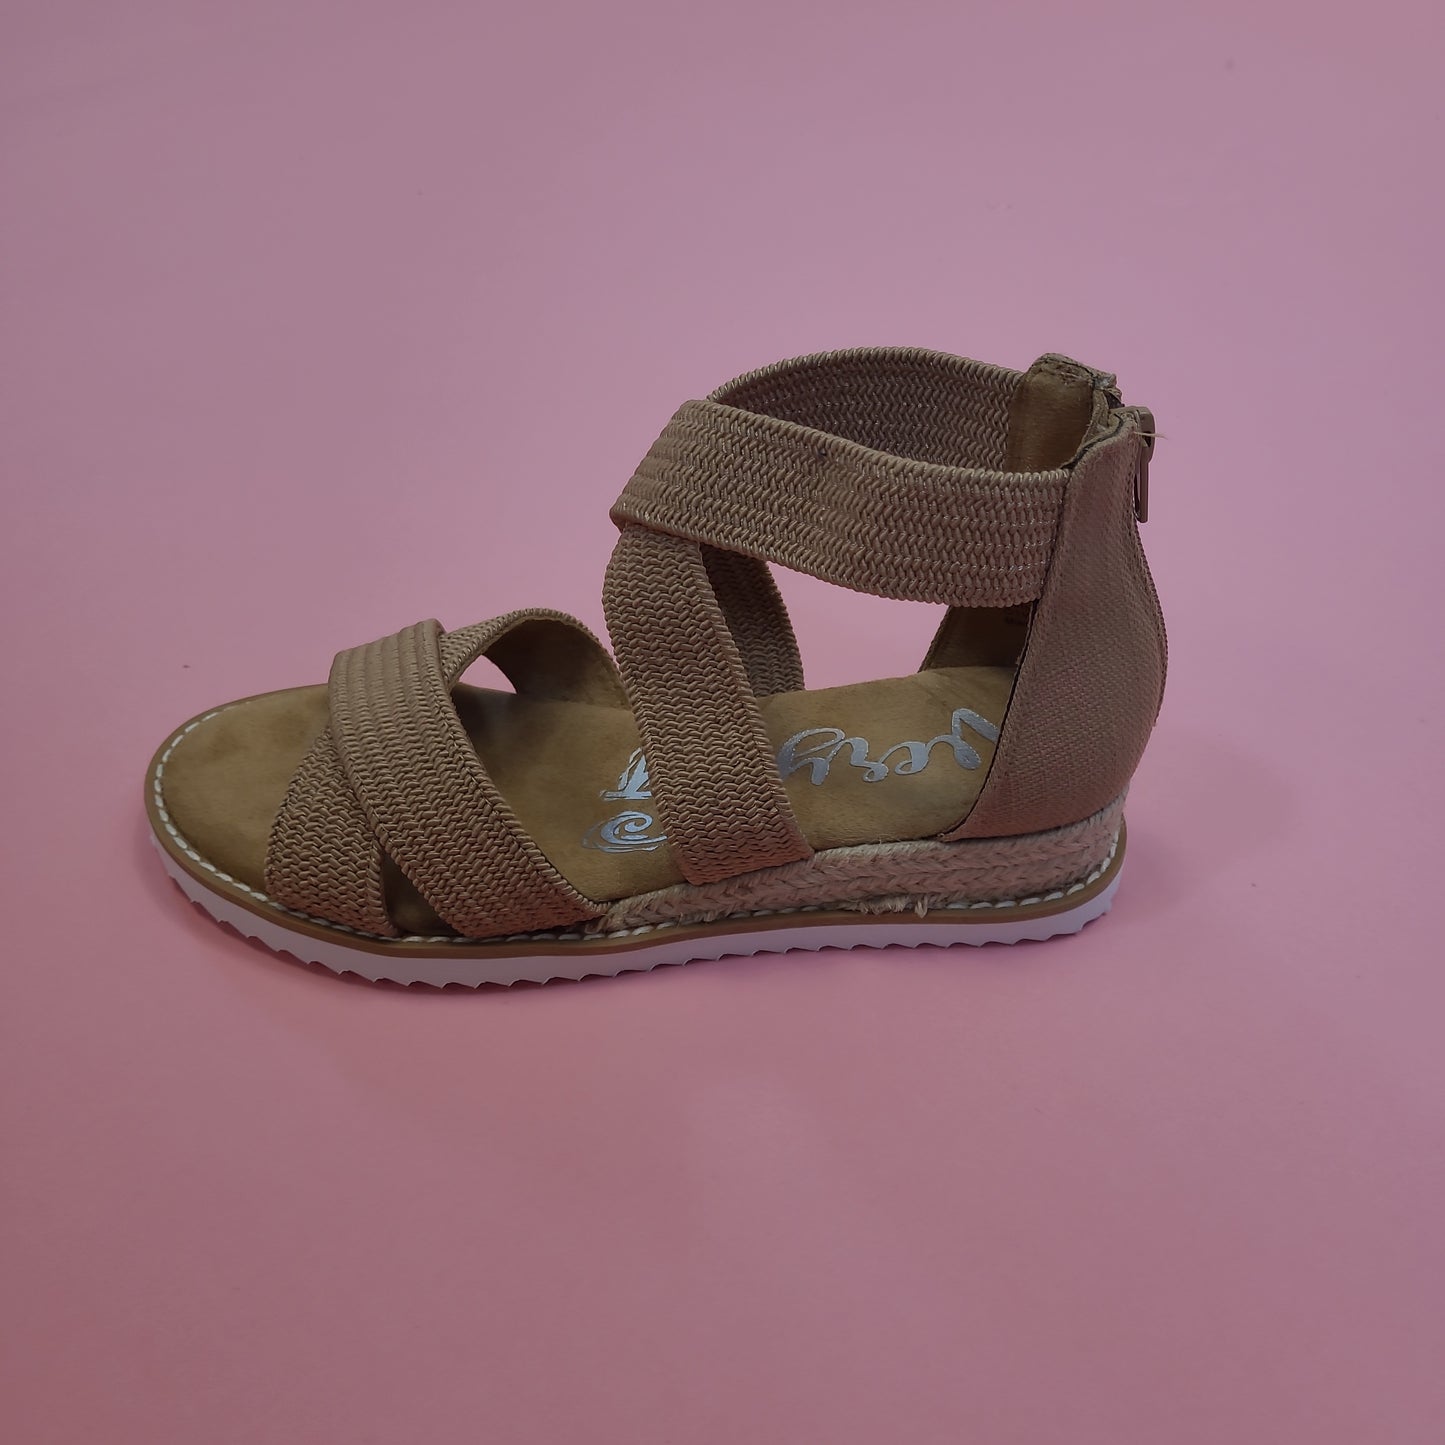 Sadie Wedge Sandal By Very G -3 Colors